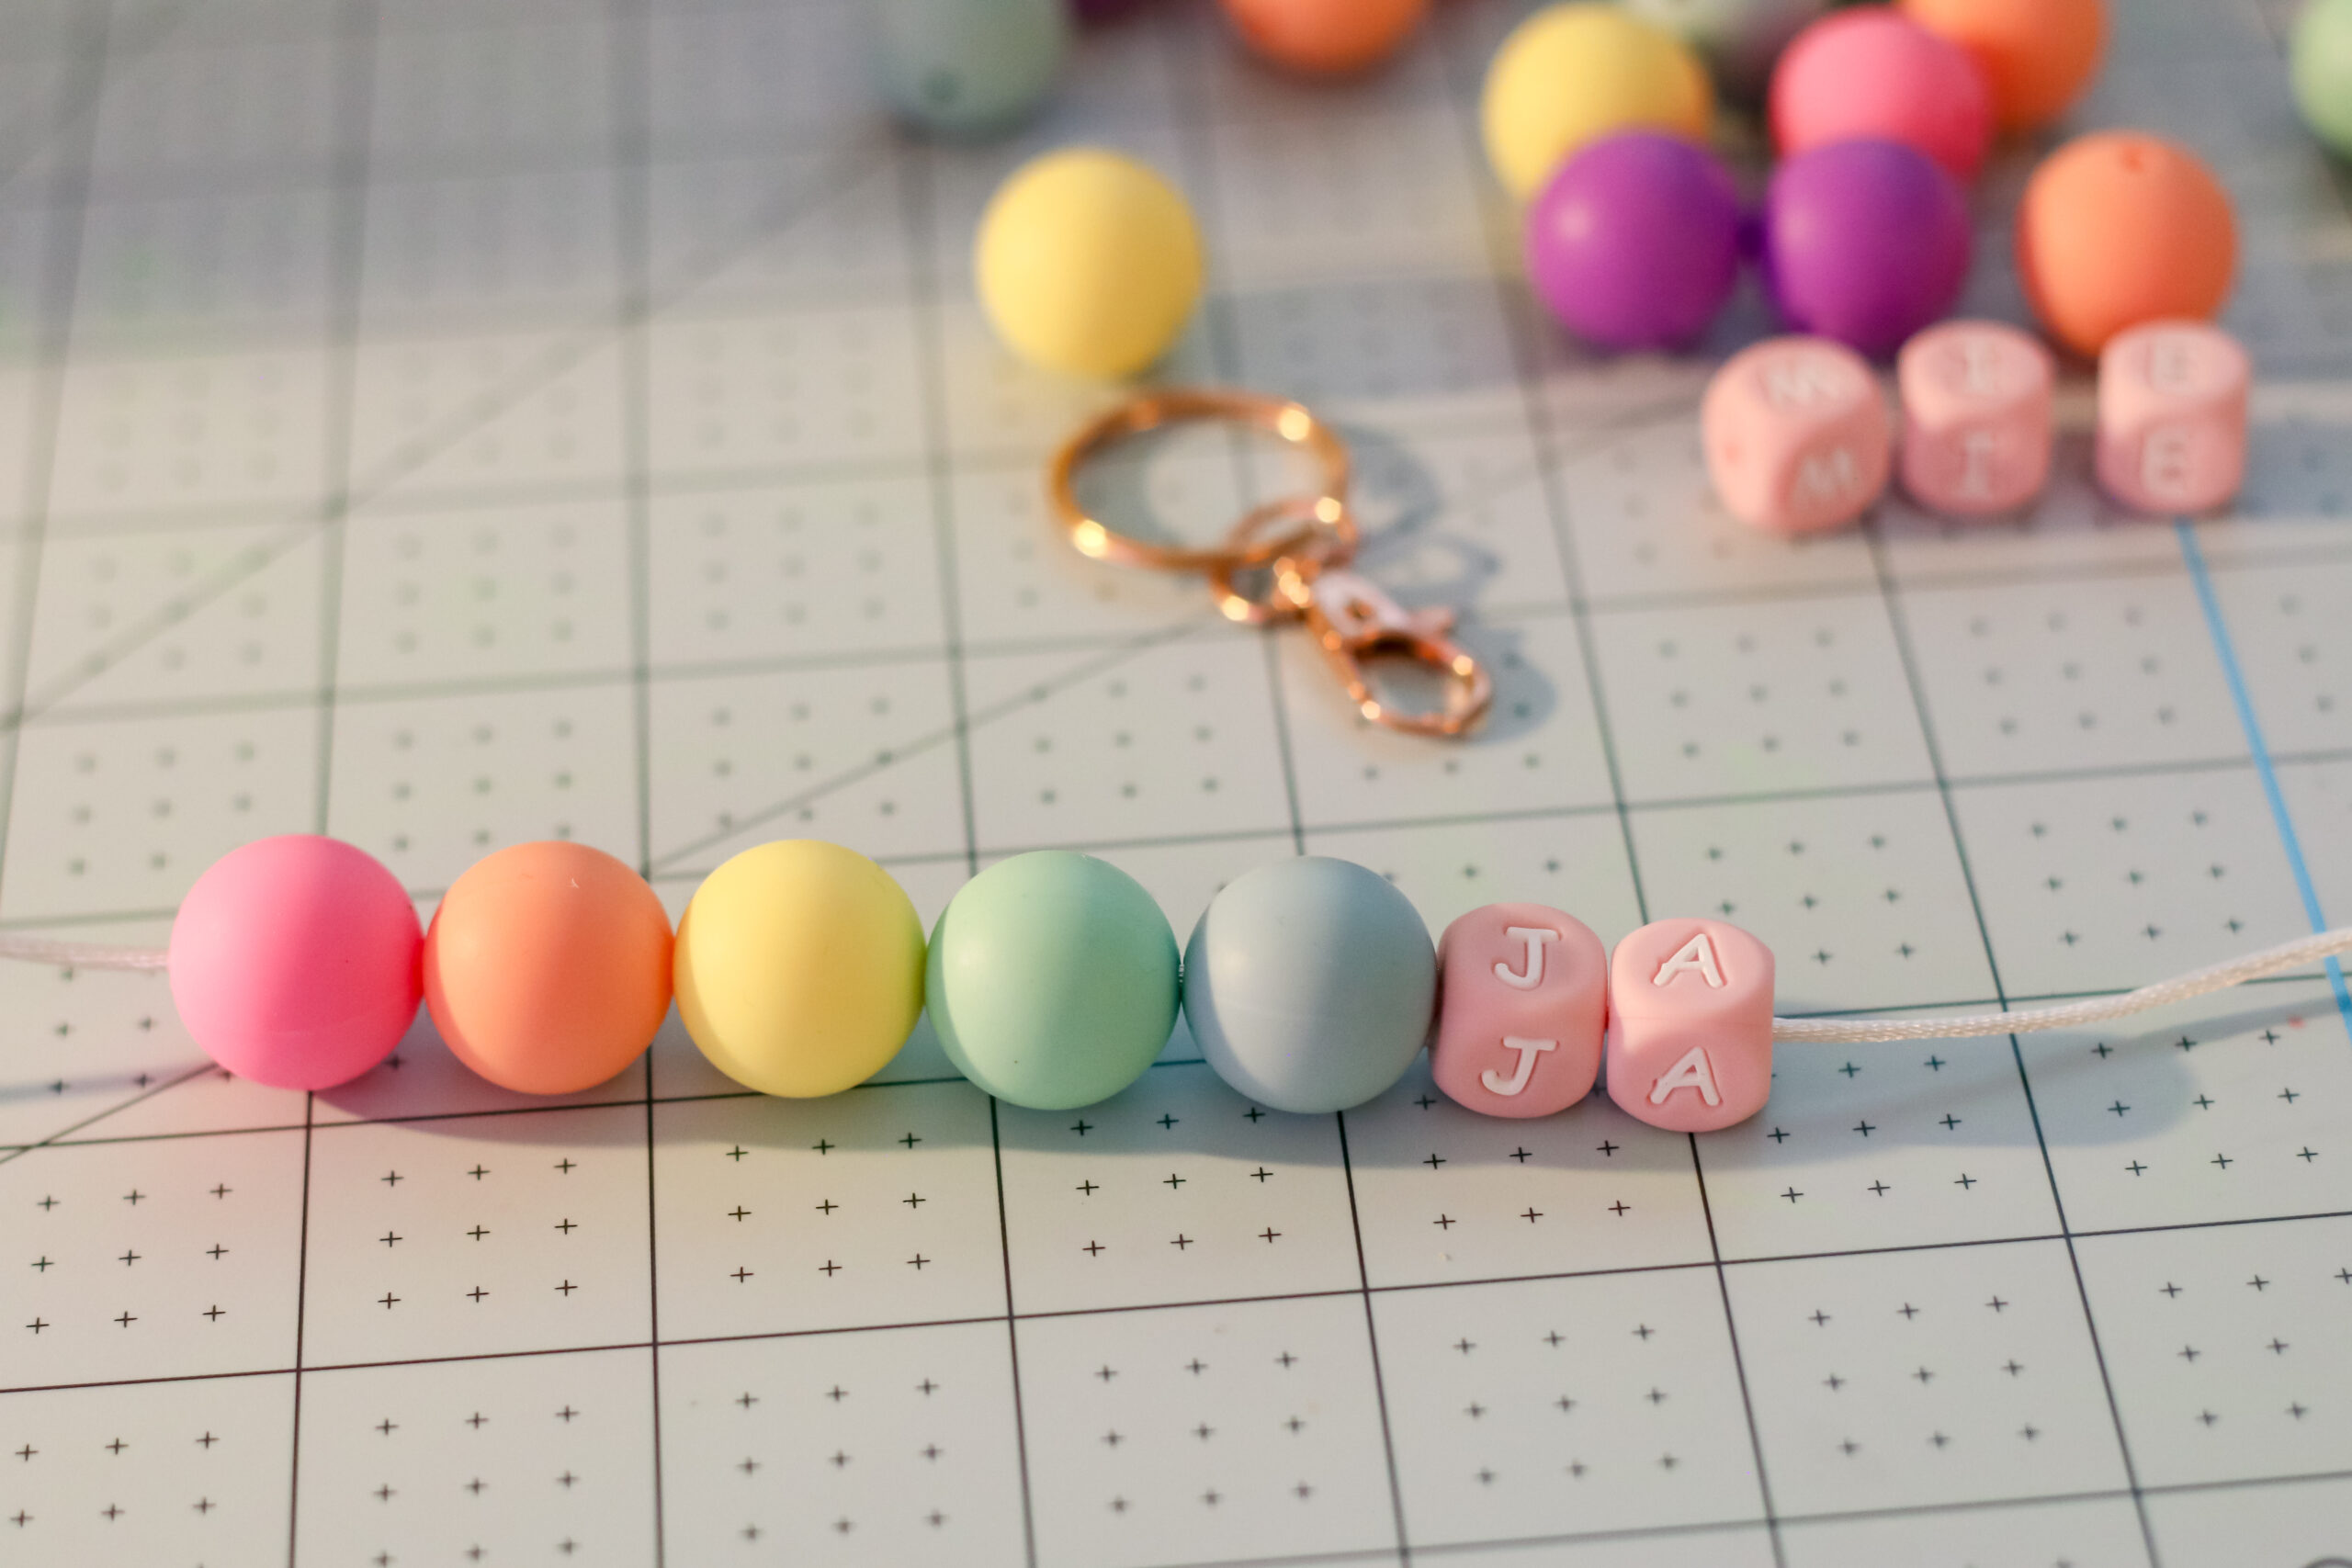 MK Silicone Focal Beads, Zoe's DIY Shop